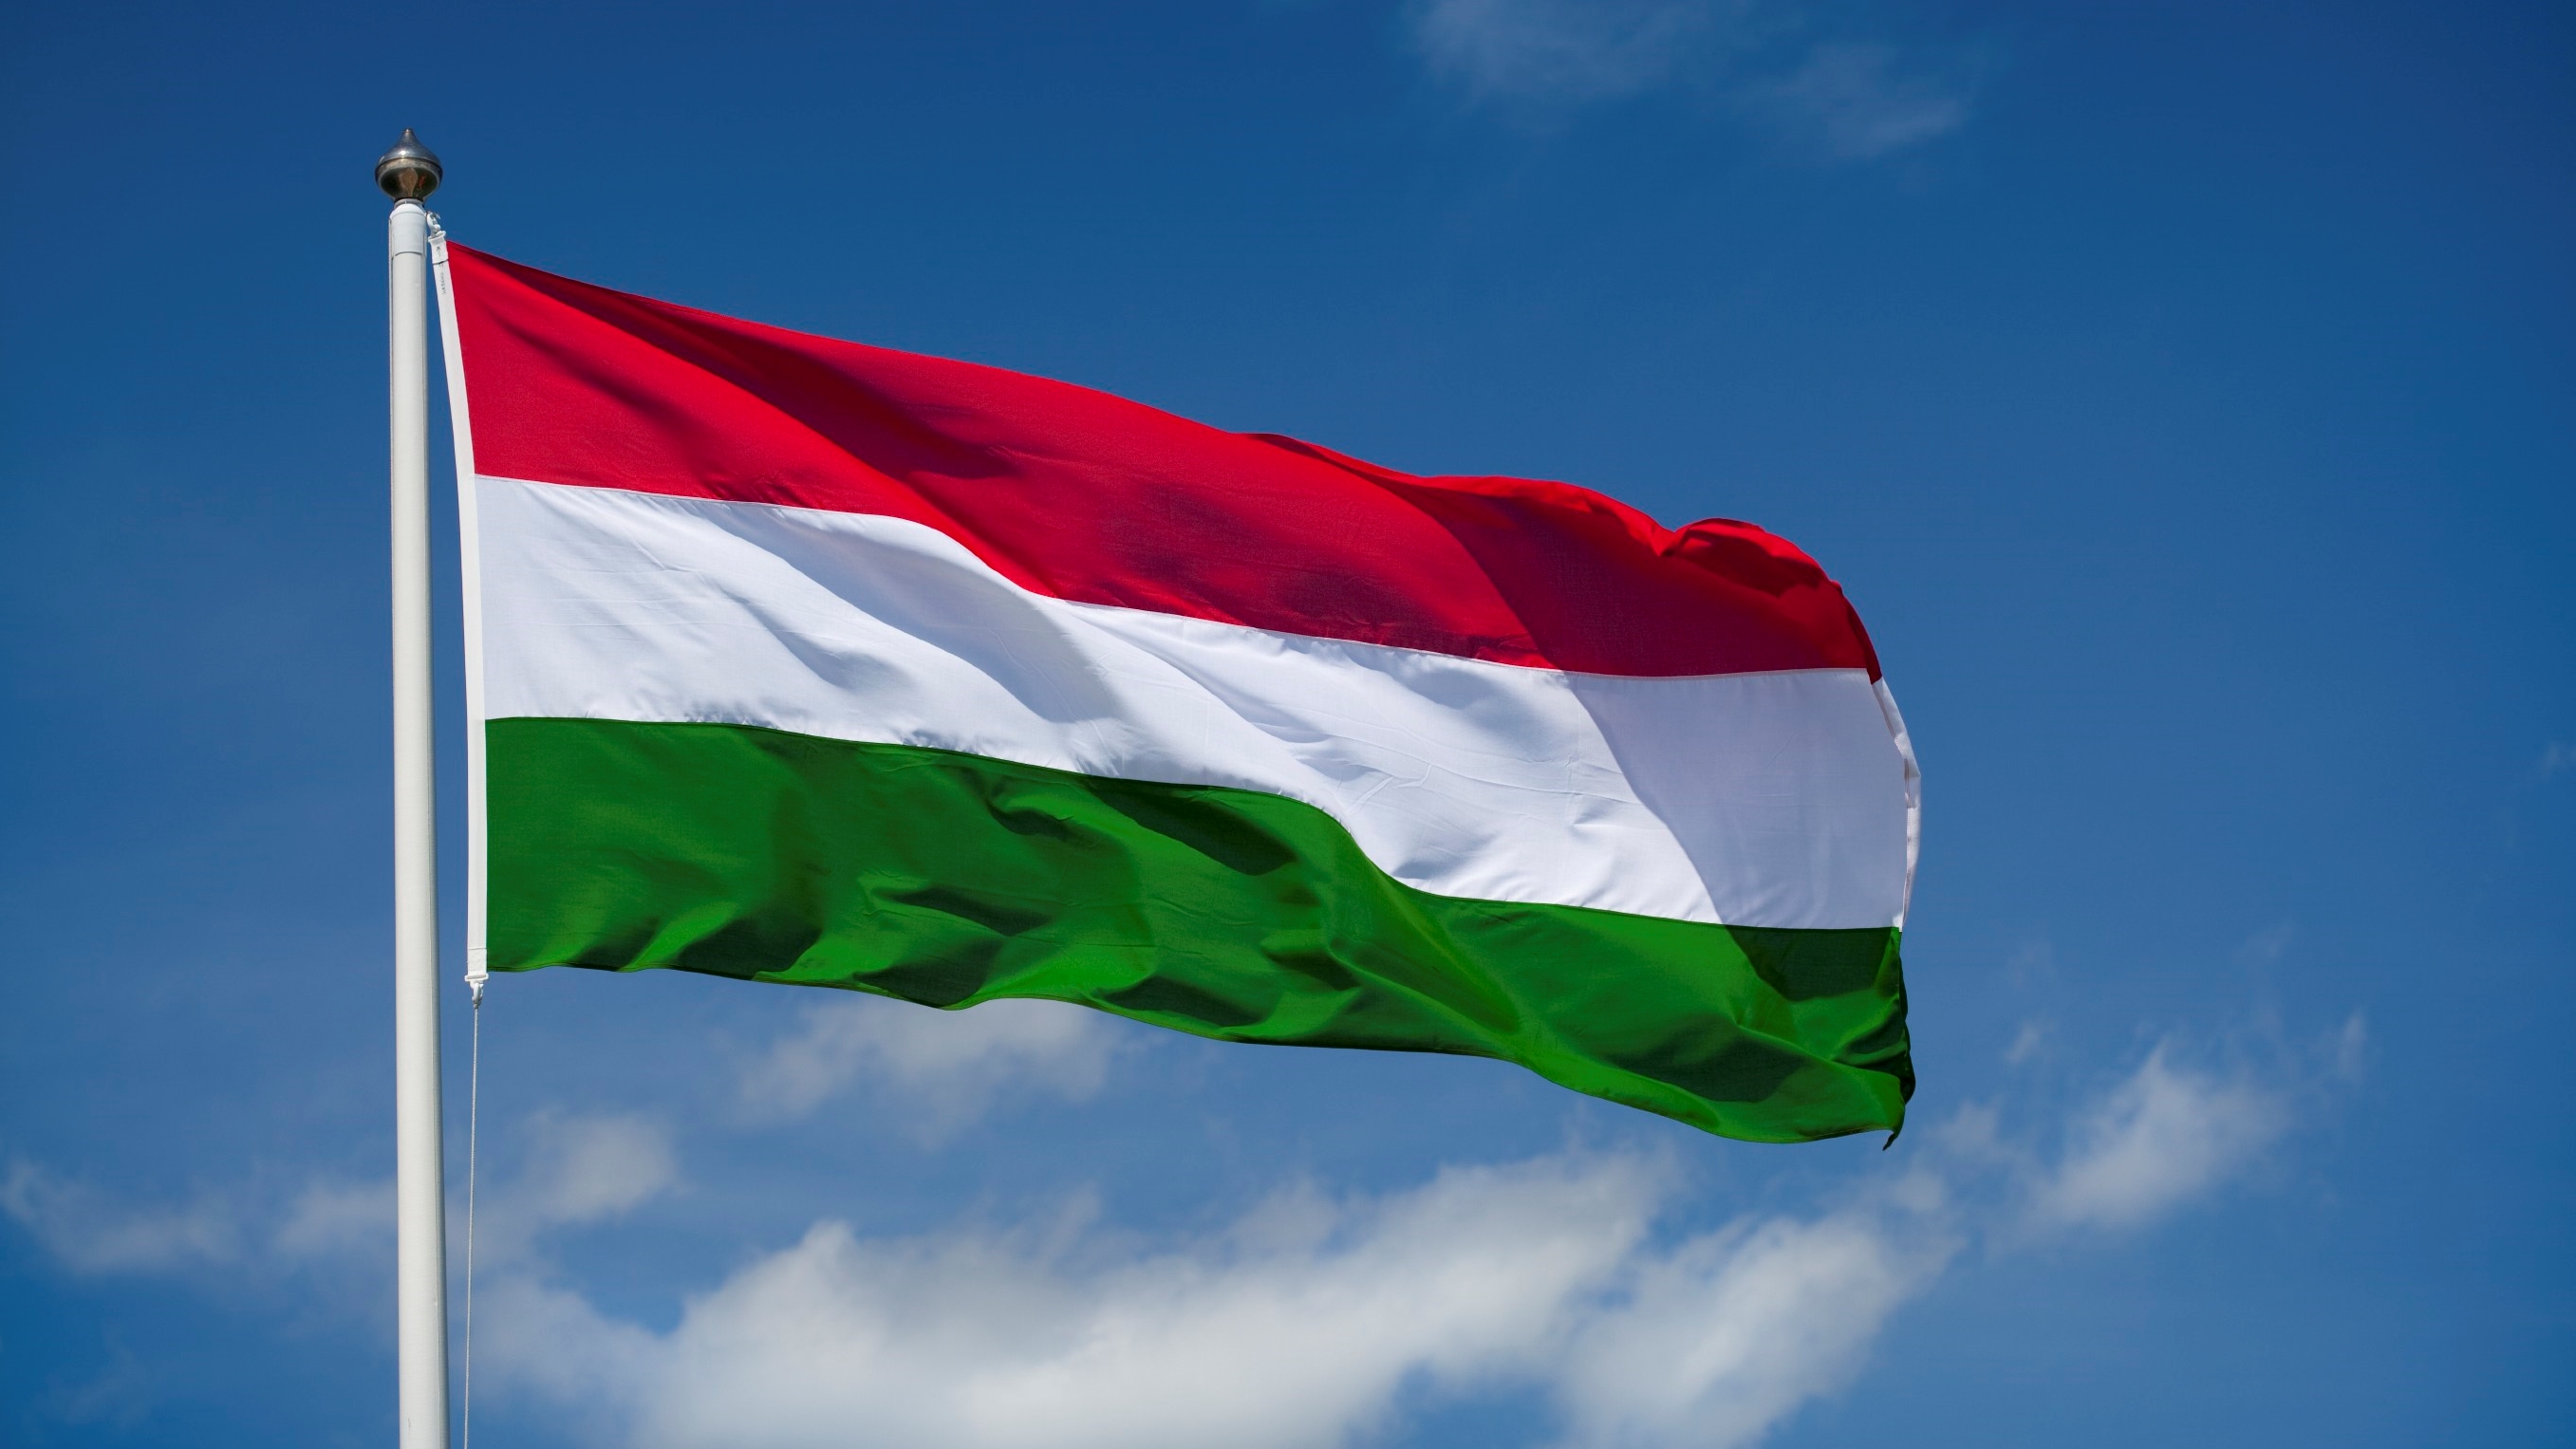 Macaristan İkili Geçiş Belgeleri Kullanıma Açılmıştır